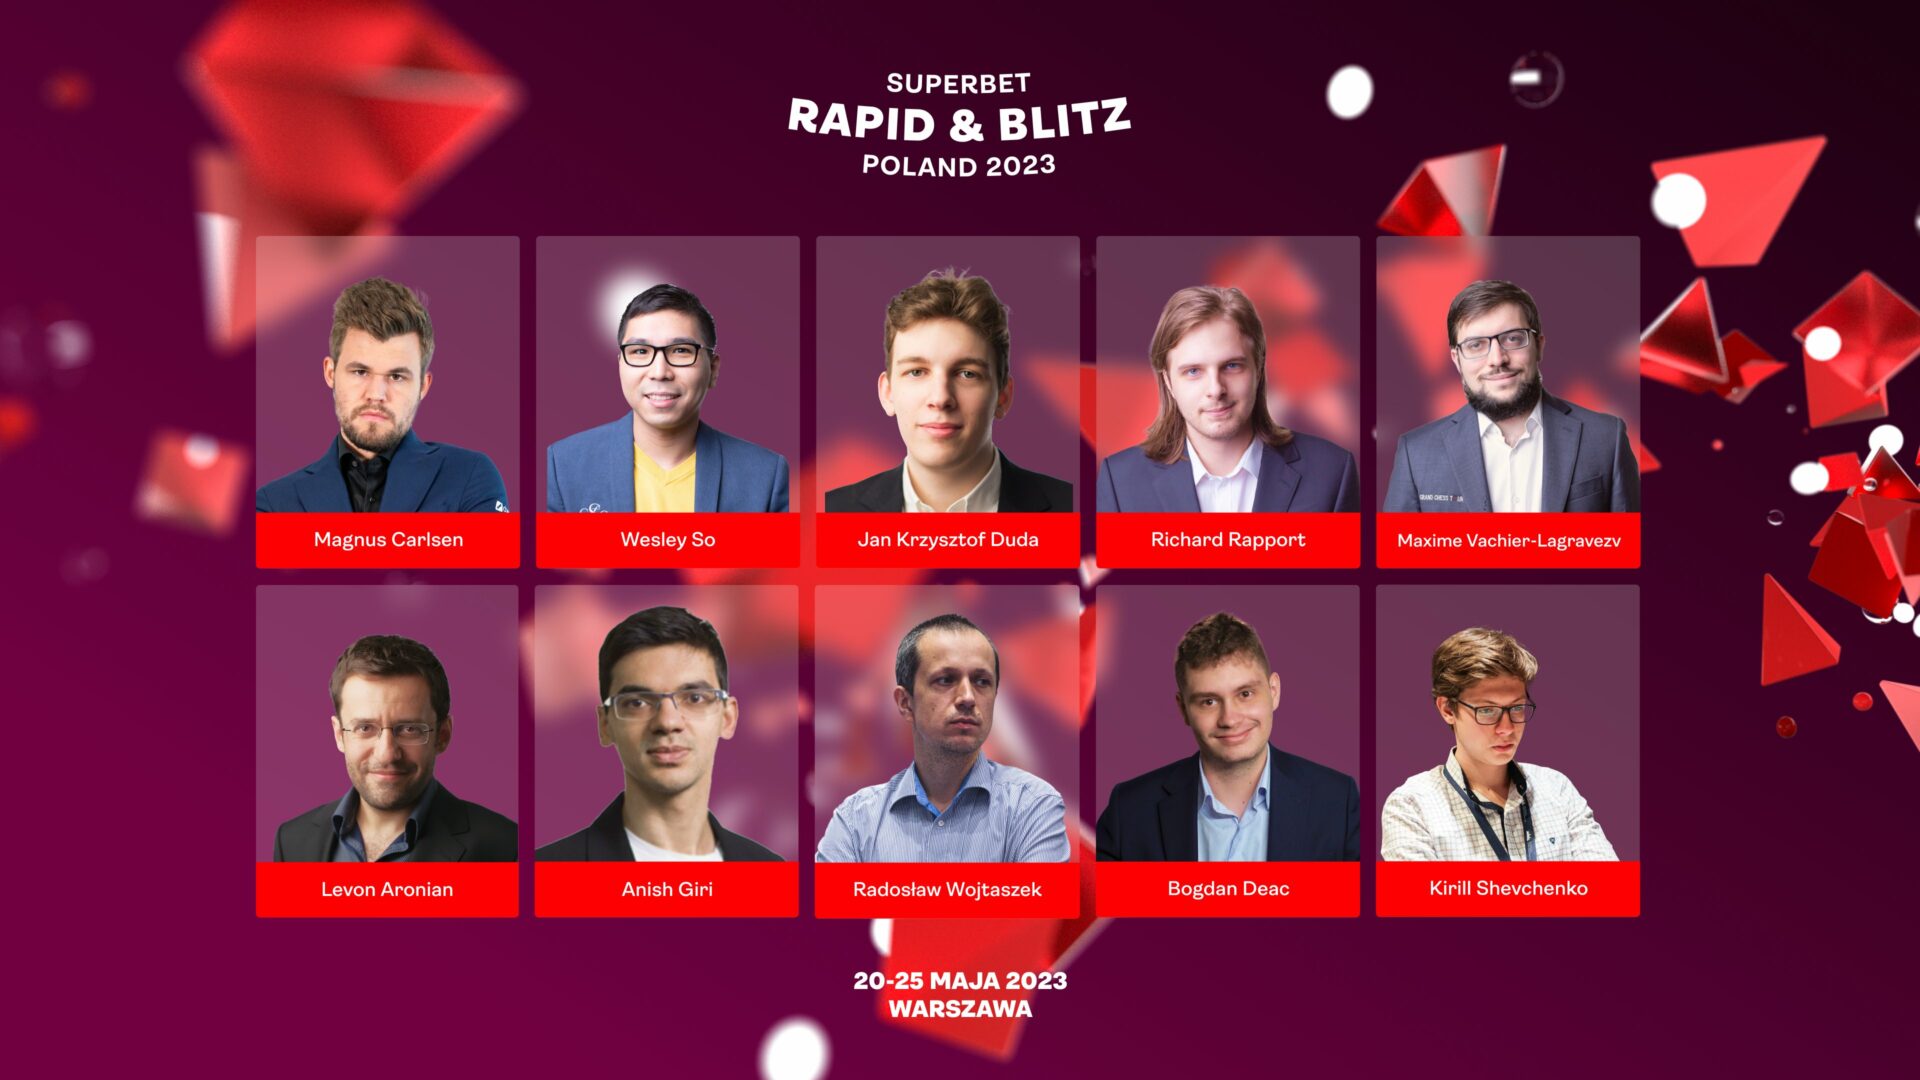 Jan-Krzysztof Duda wins Superbet Rapid & Blitz